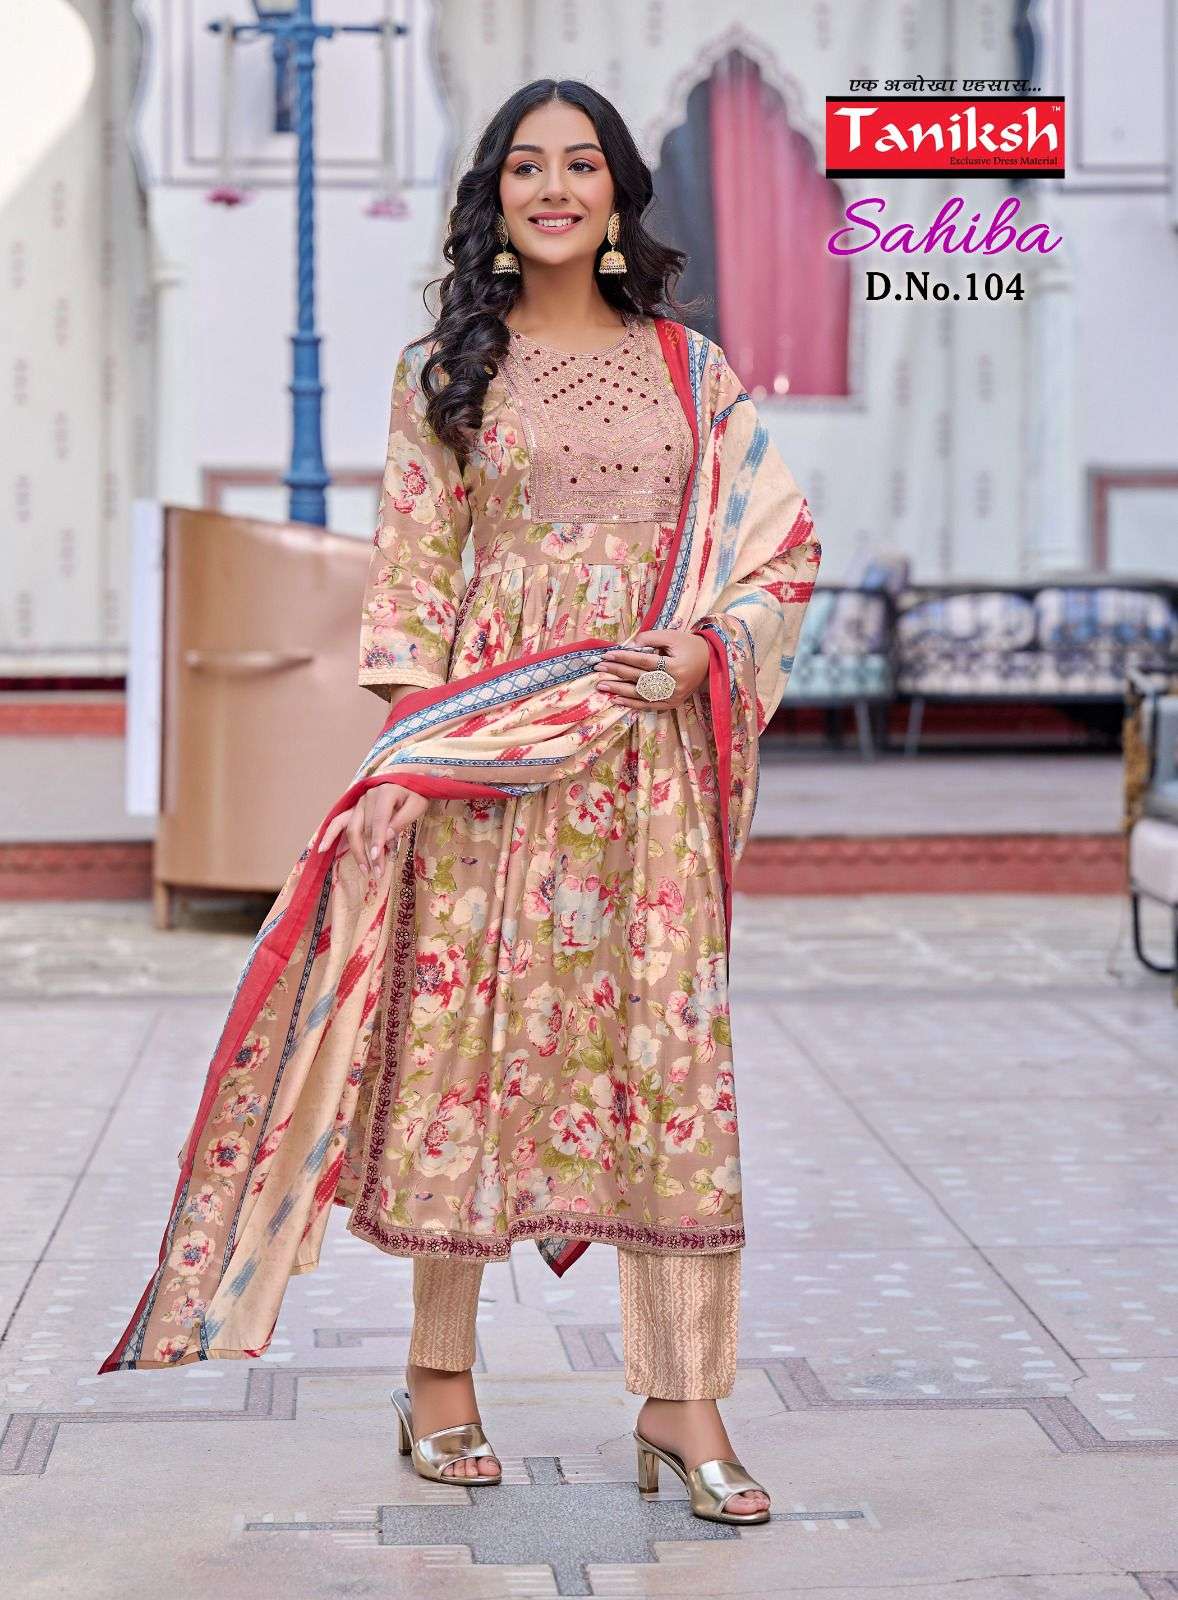 taniksh sahiba 101-108 series readymade designer dress catalogue wholesale price surat